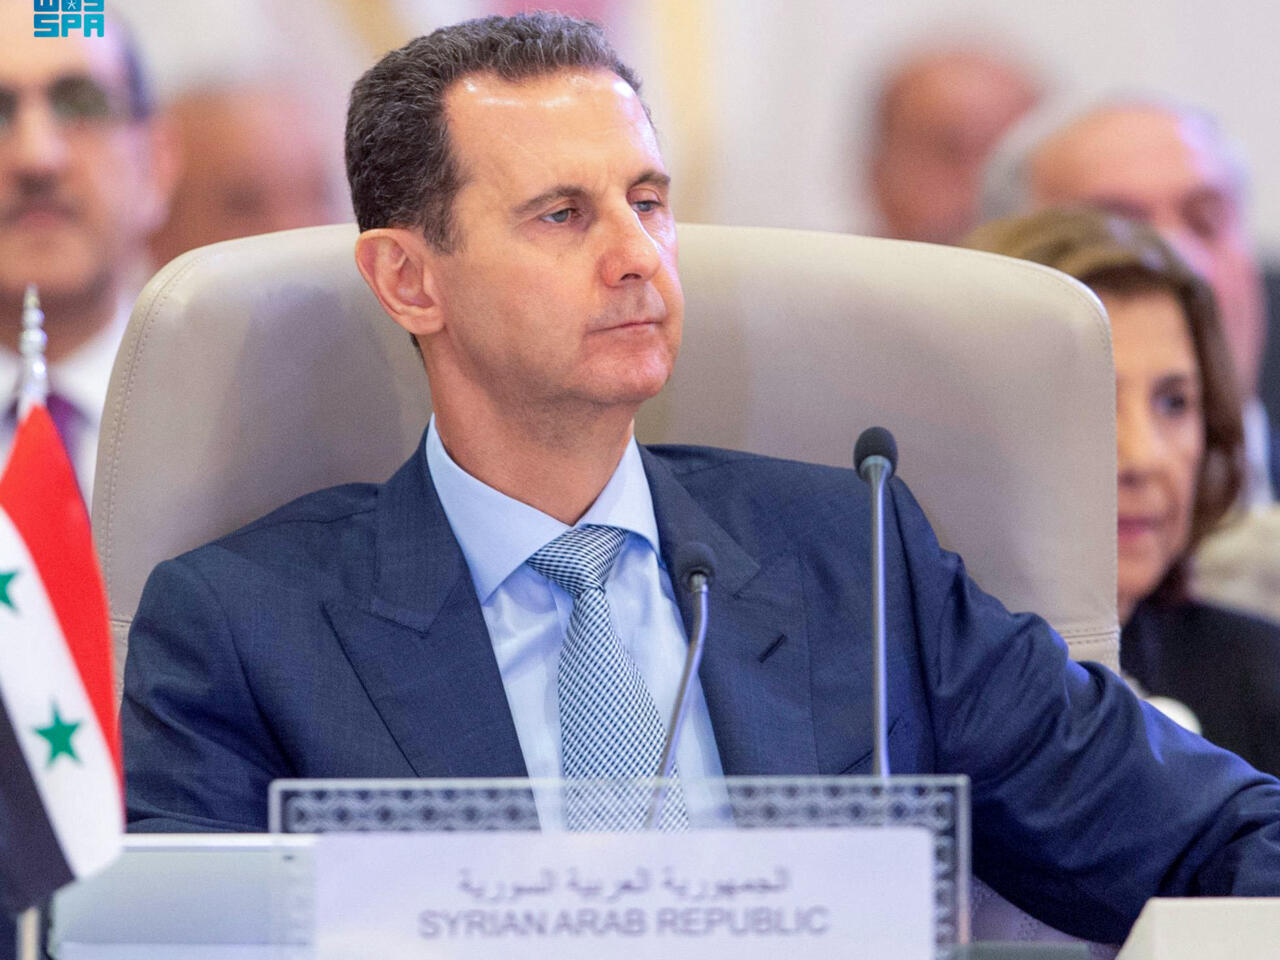 Attaques chimiques en 2013 en Syrie: la justice française émet un mandat d'arrêt contre Bachar Al-Assad